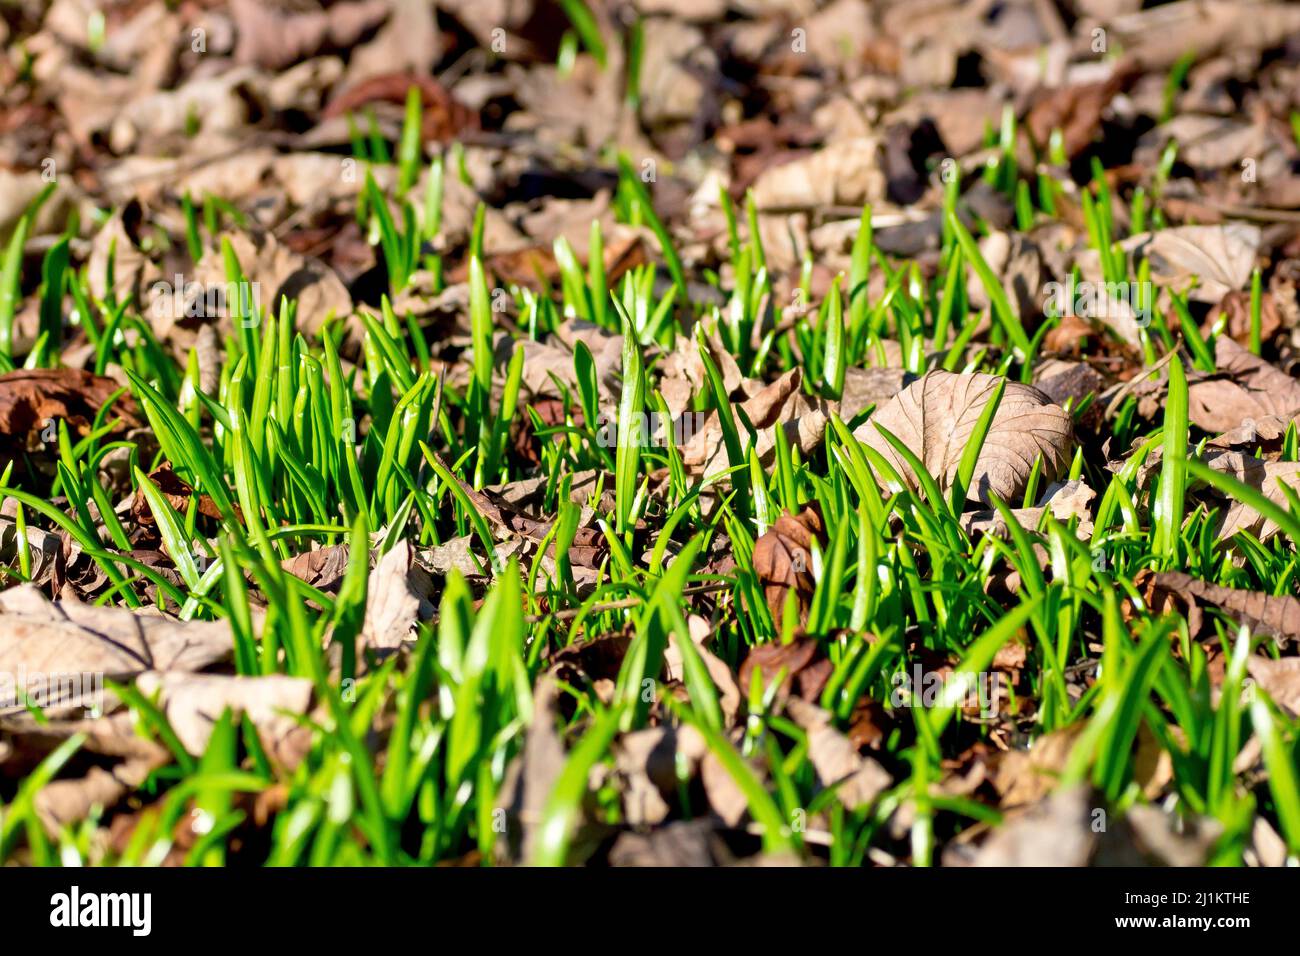 Primo piano dei primi germogli verdi di primavera che emergono da sotto la lettiera fogliare di un bosco. Foto Stock